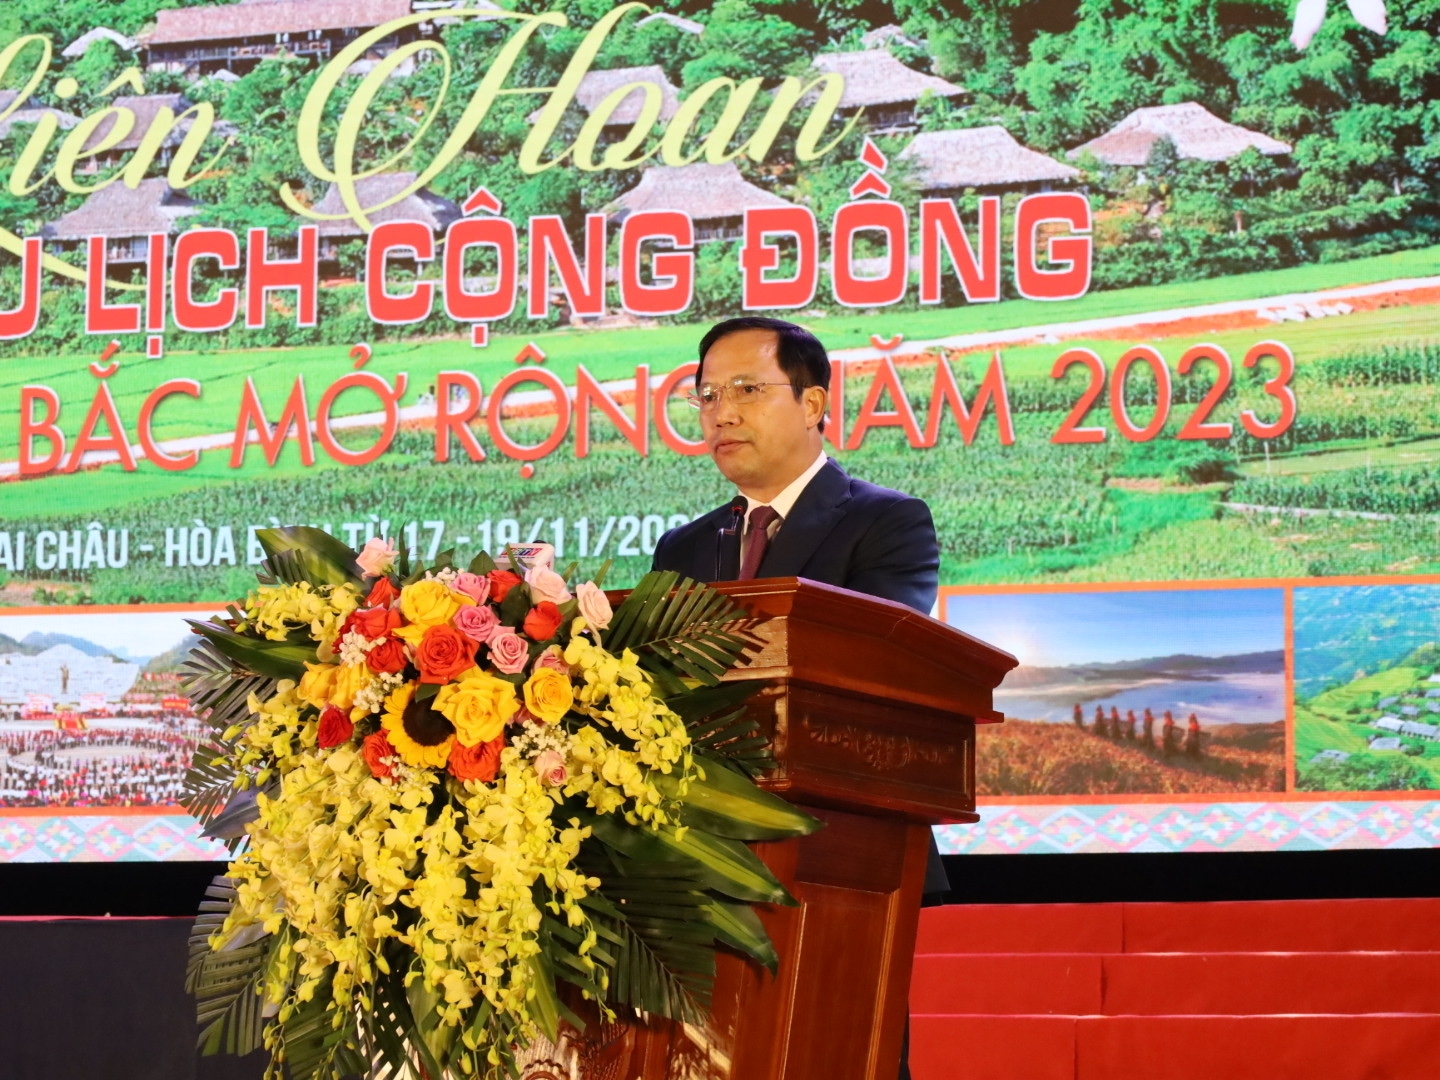 Phó Chủ tịch UBND tỉnh Hòa Bình Nguyễn Văn Toàn phát biểu khai mạc Liên hoan